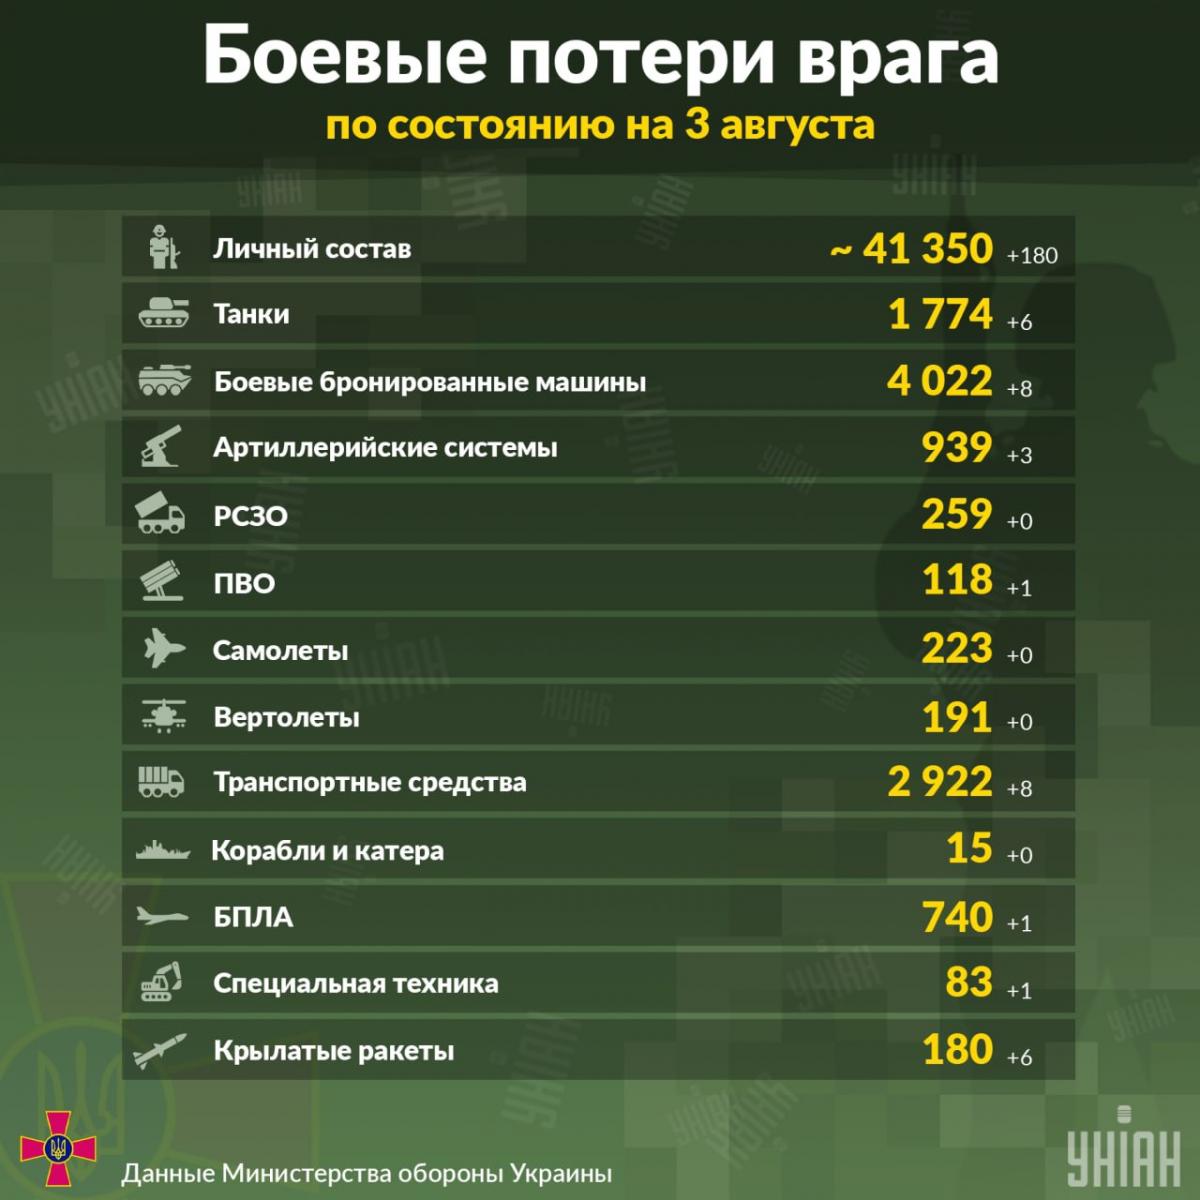  noi pierderi ale Federației Ruse în Ucraina au devenit cunoscute/infographics UNIAN